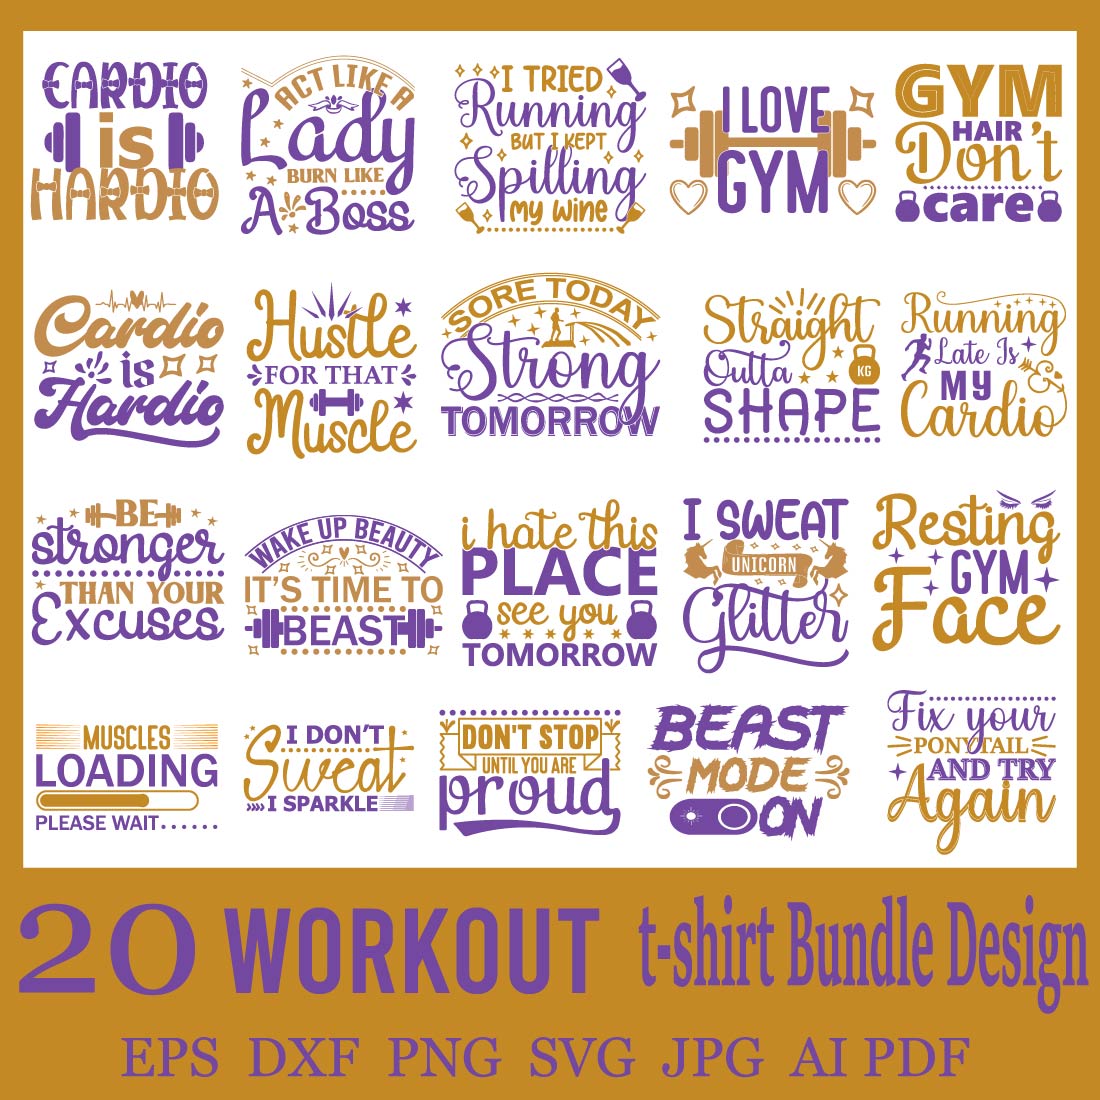 Workout SVG Bundle Design cover image.